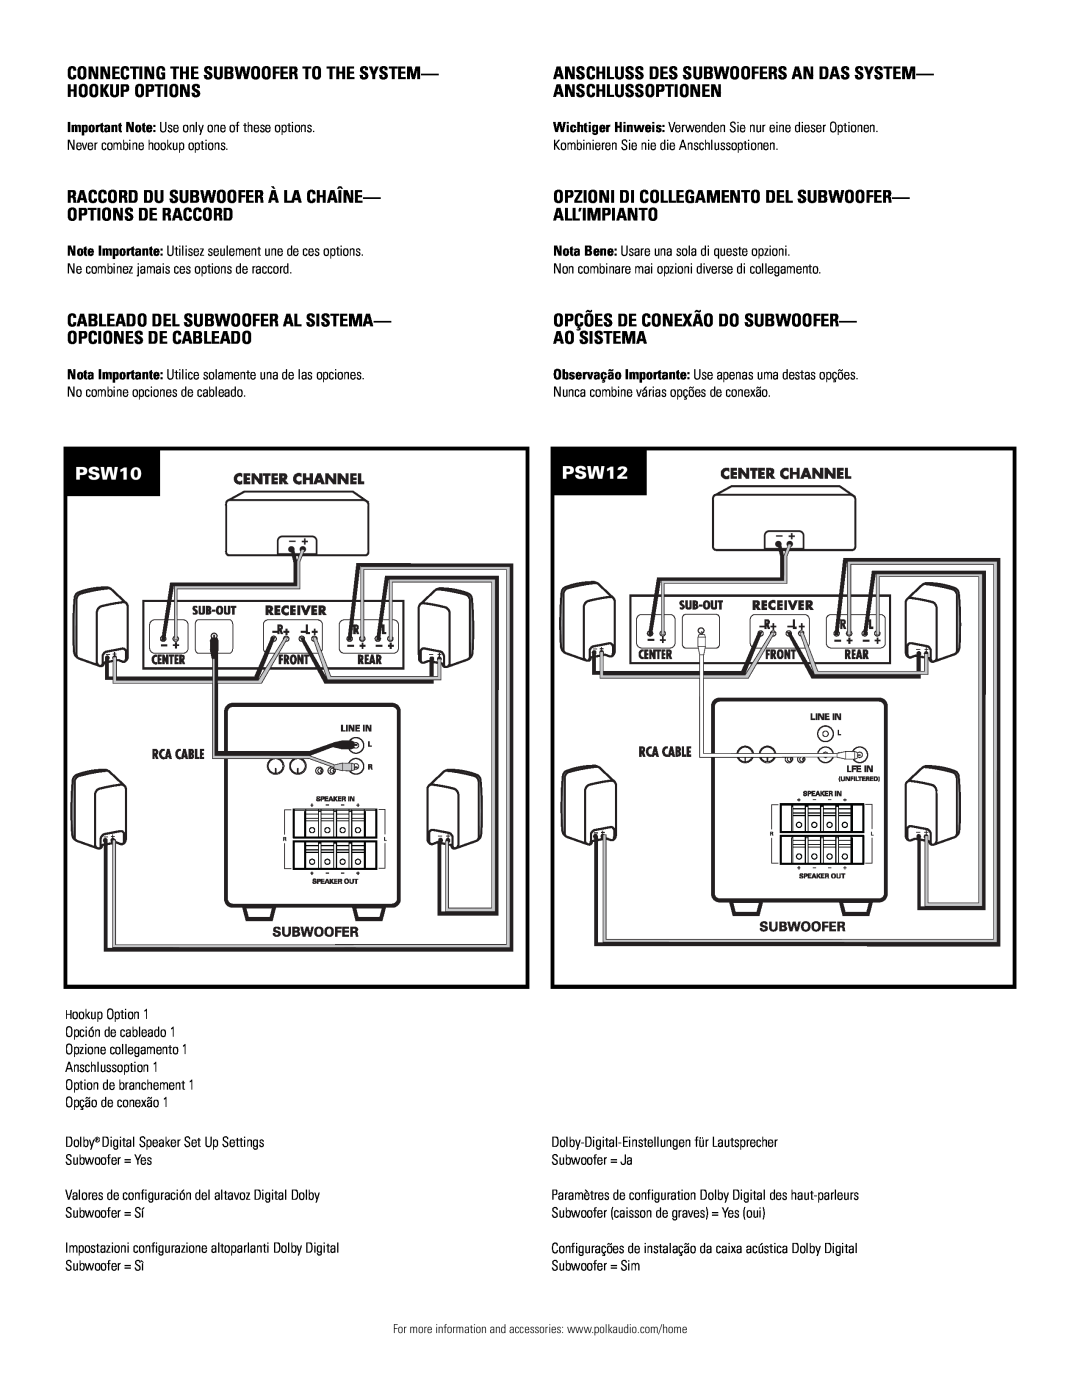 Polk Audio PSW12 owner manual Opções De Conexão Do Subwoofer- Ao Sistema, PSW10 